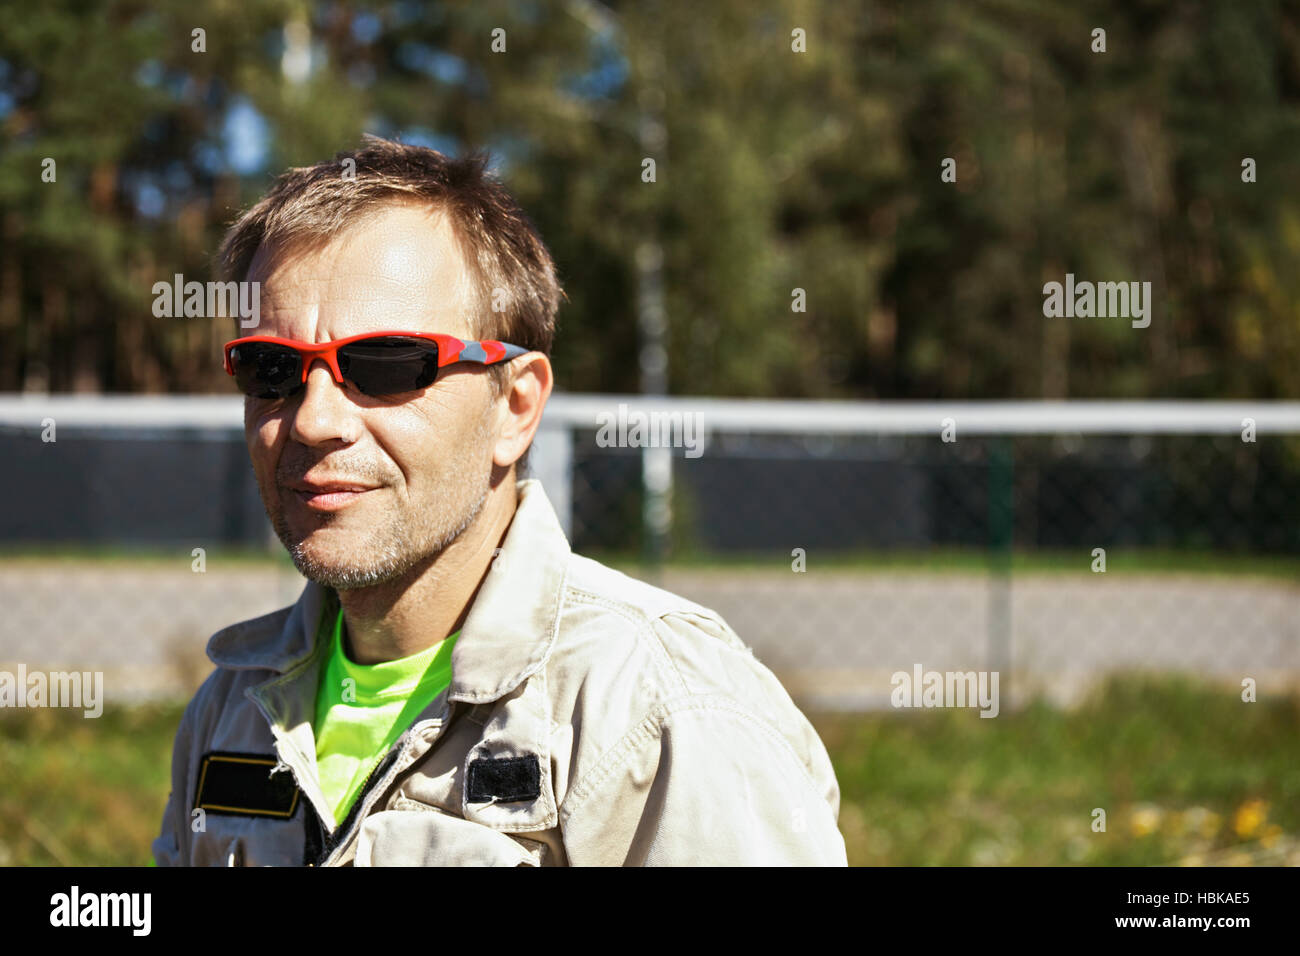 Rescuer in sunglasses Stock Photo